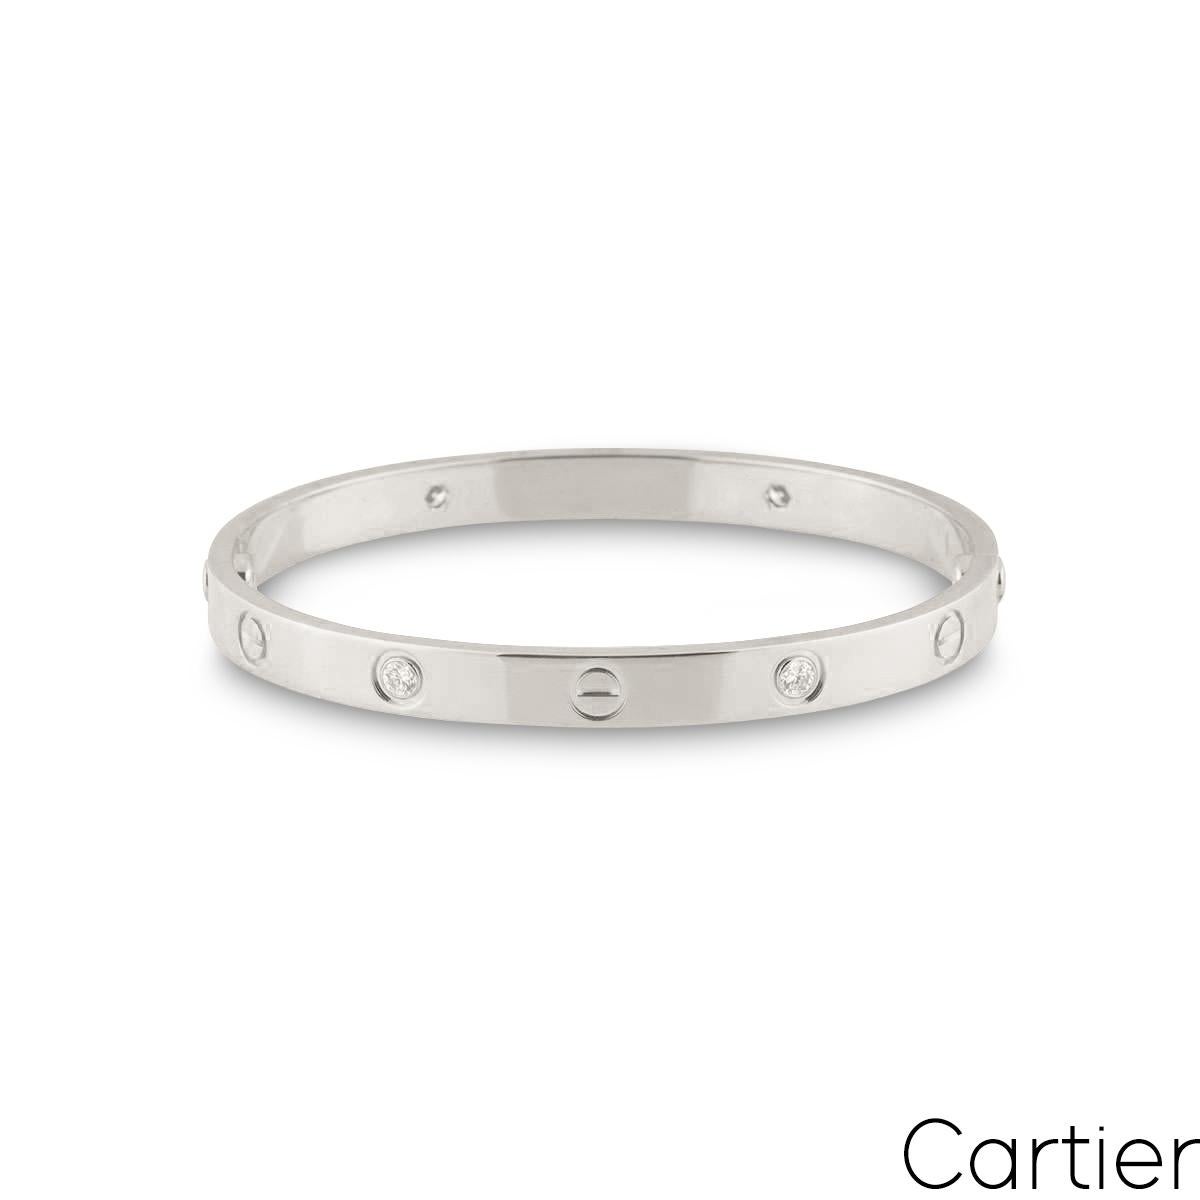 Un bracelet de diamants en or blanc 18 carats de Cartier de la collection Love. Le bracelet comprend des motifs de vis emblématiques alternant avec des diamants ronds de taille brillante. Il y a 4 diamants ronds de taille brillante dans une monture